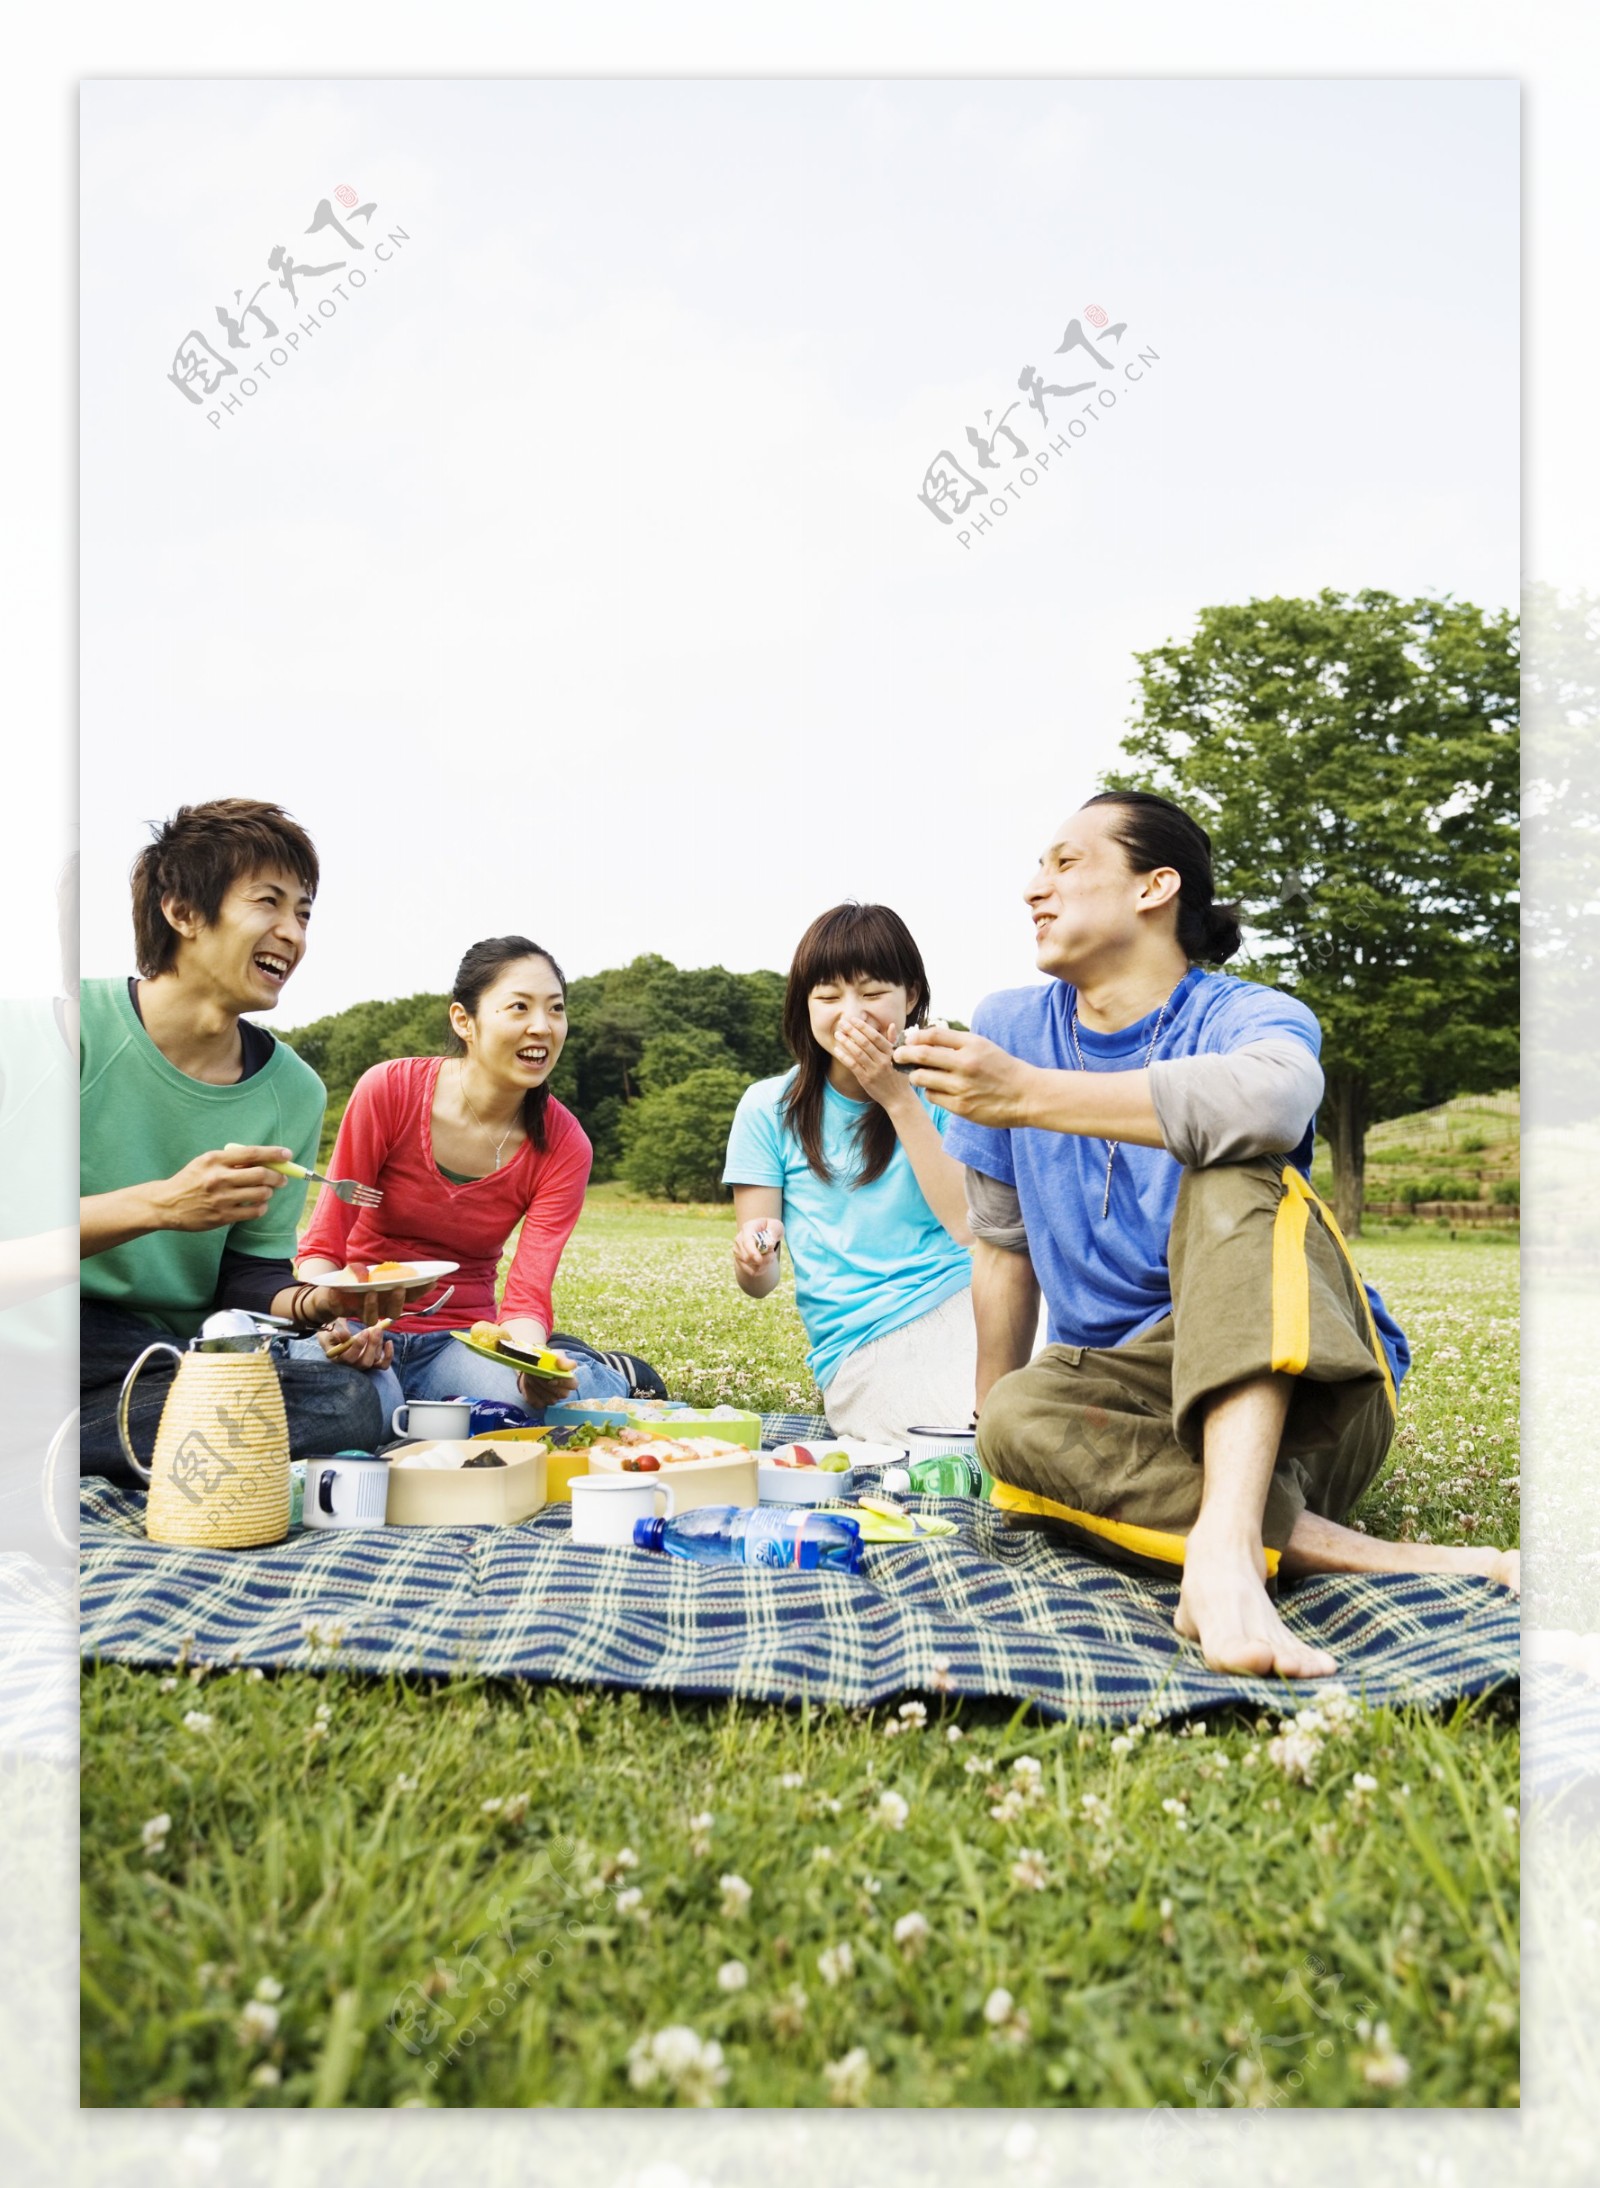 野餐的时尚青年图片